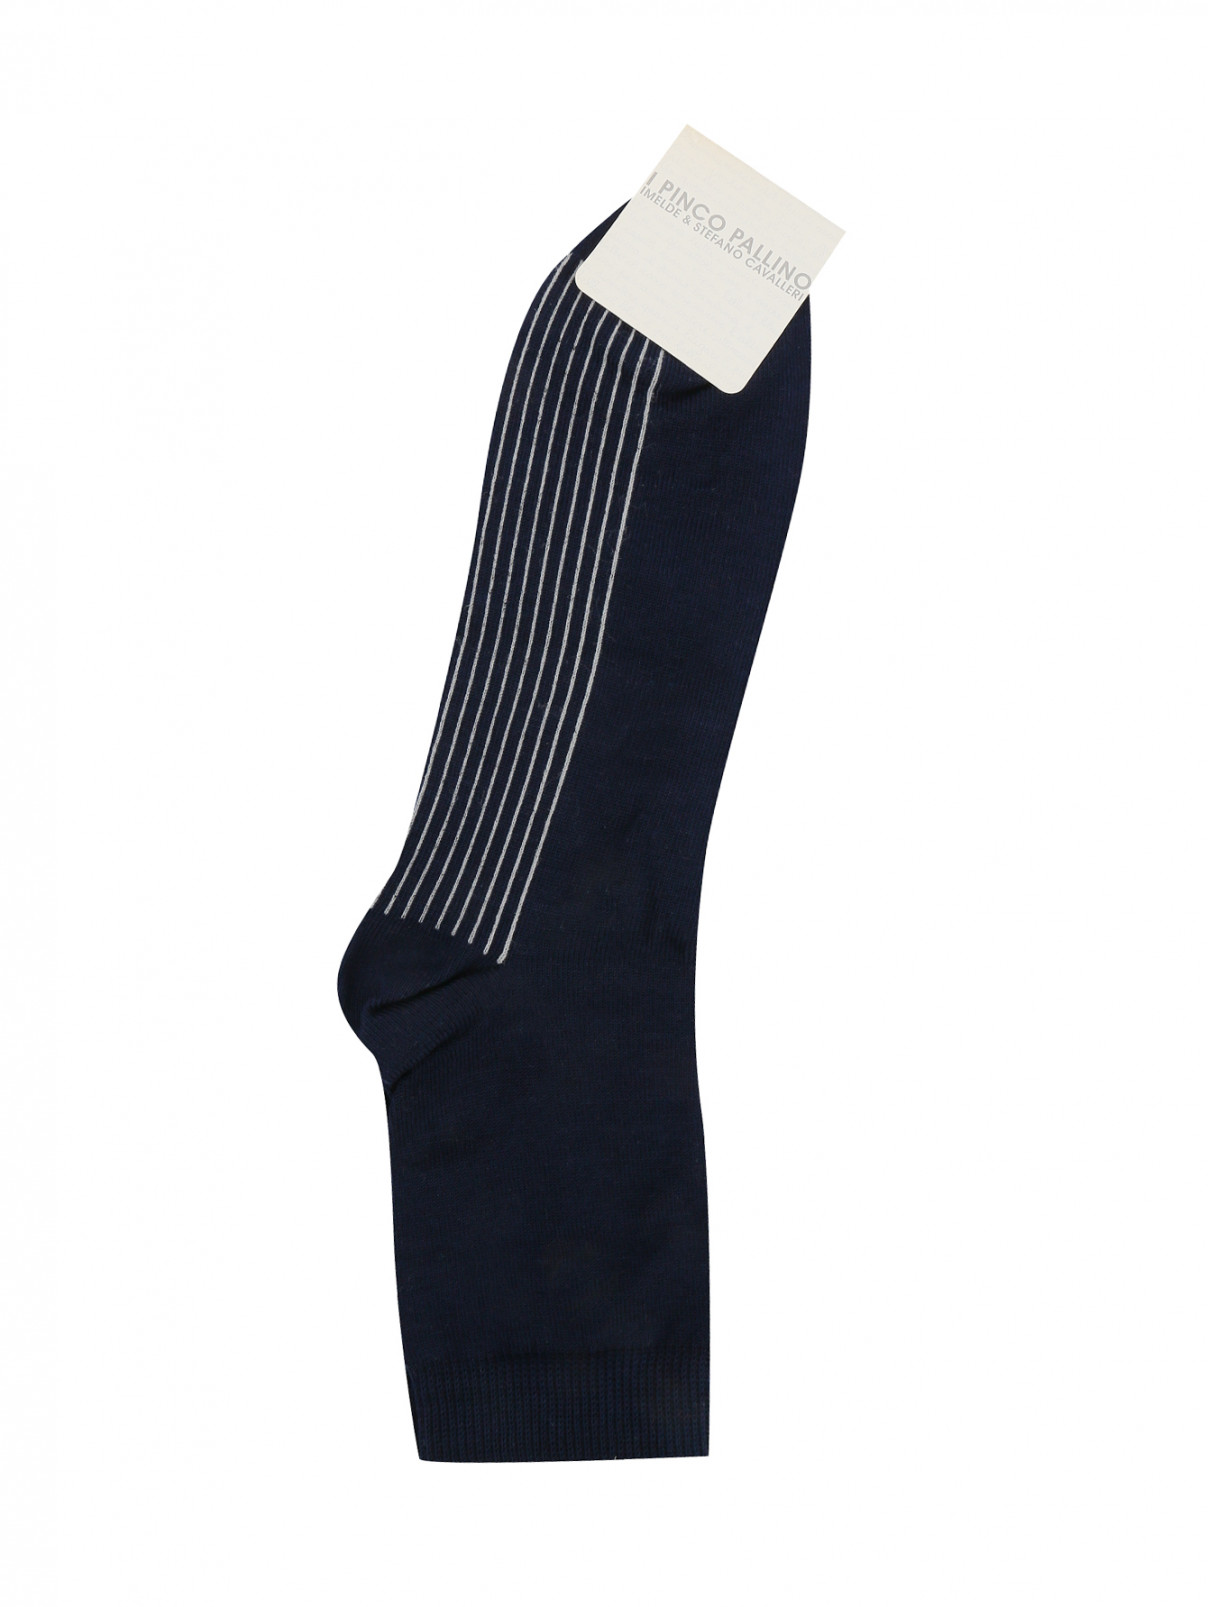 Носки из хлопка с принтом I Pinco Pallino  –  Общий вид  – Цвет:  Синий